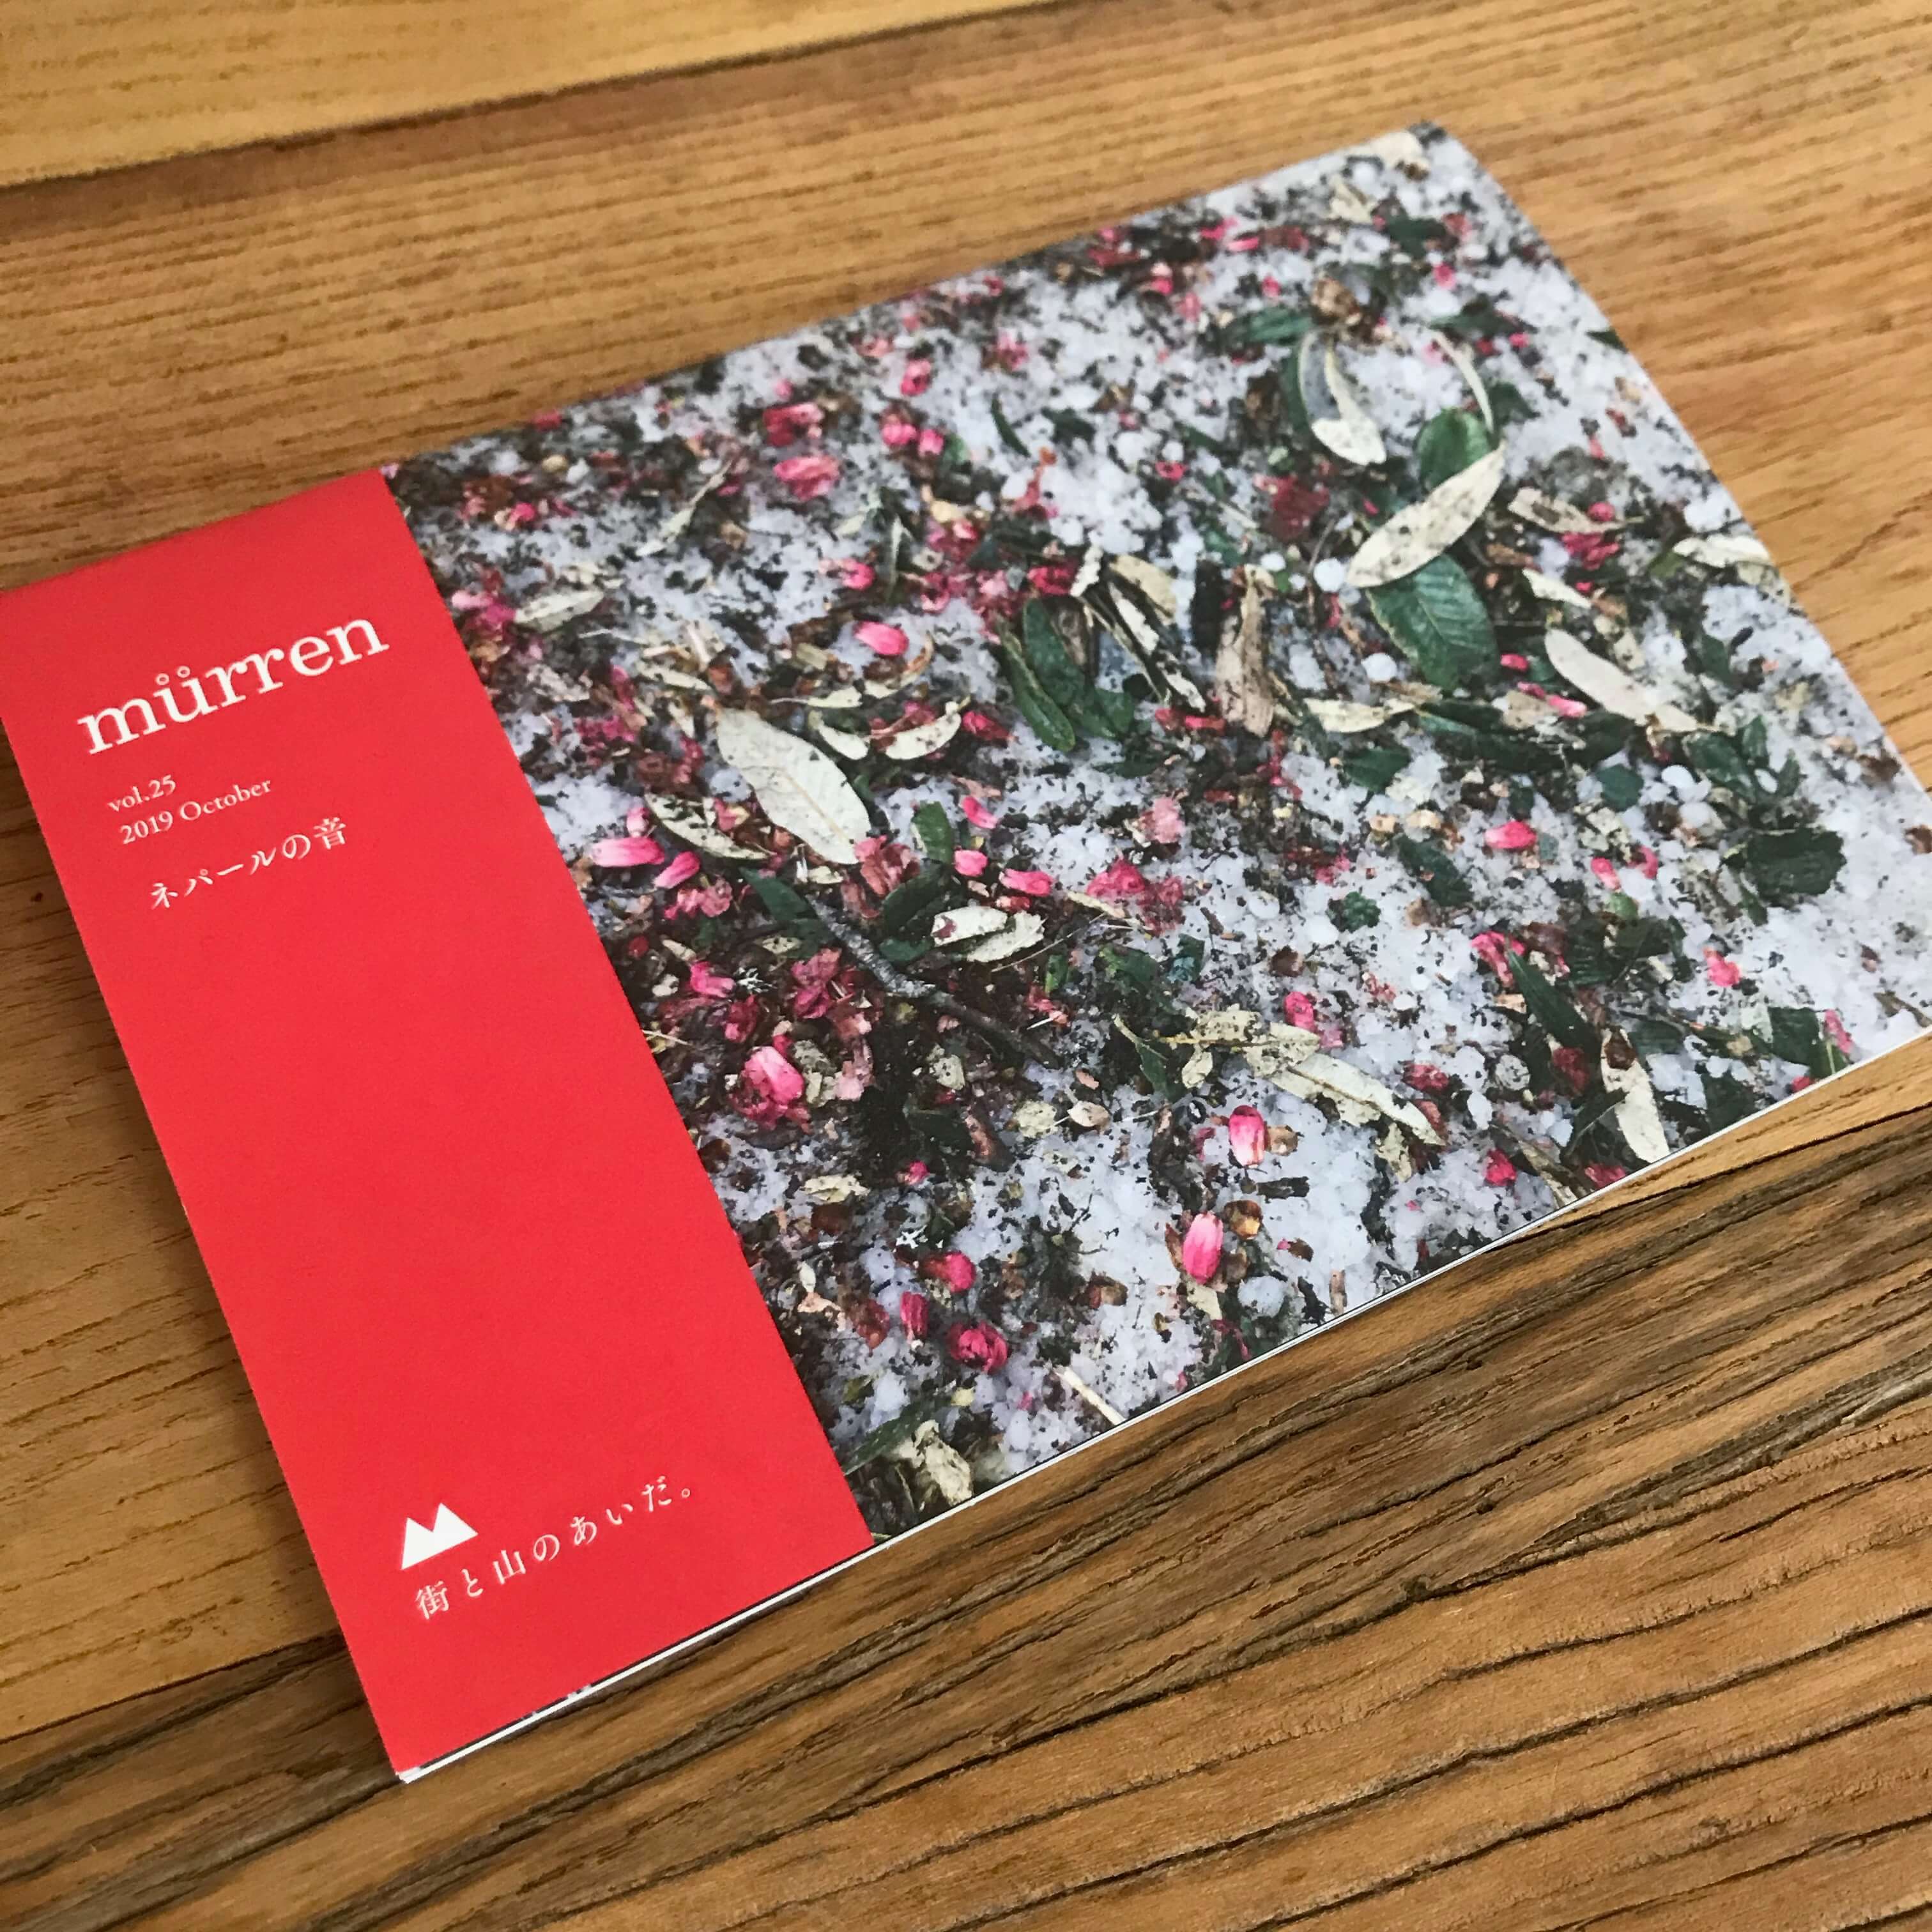 『murren』最新25号と<br/>バックナンバーのご紹介